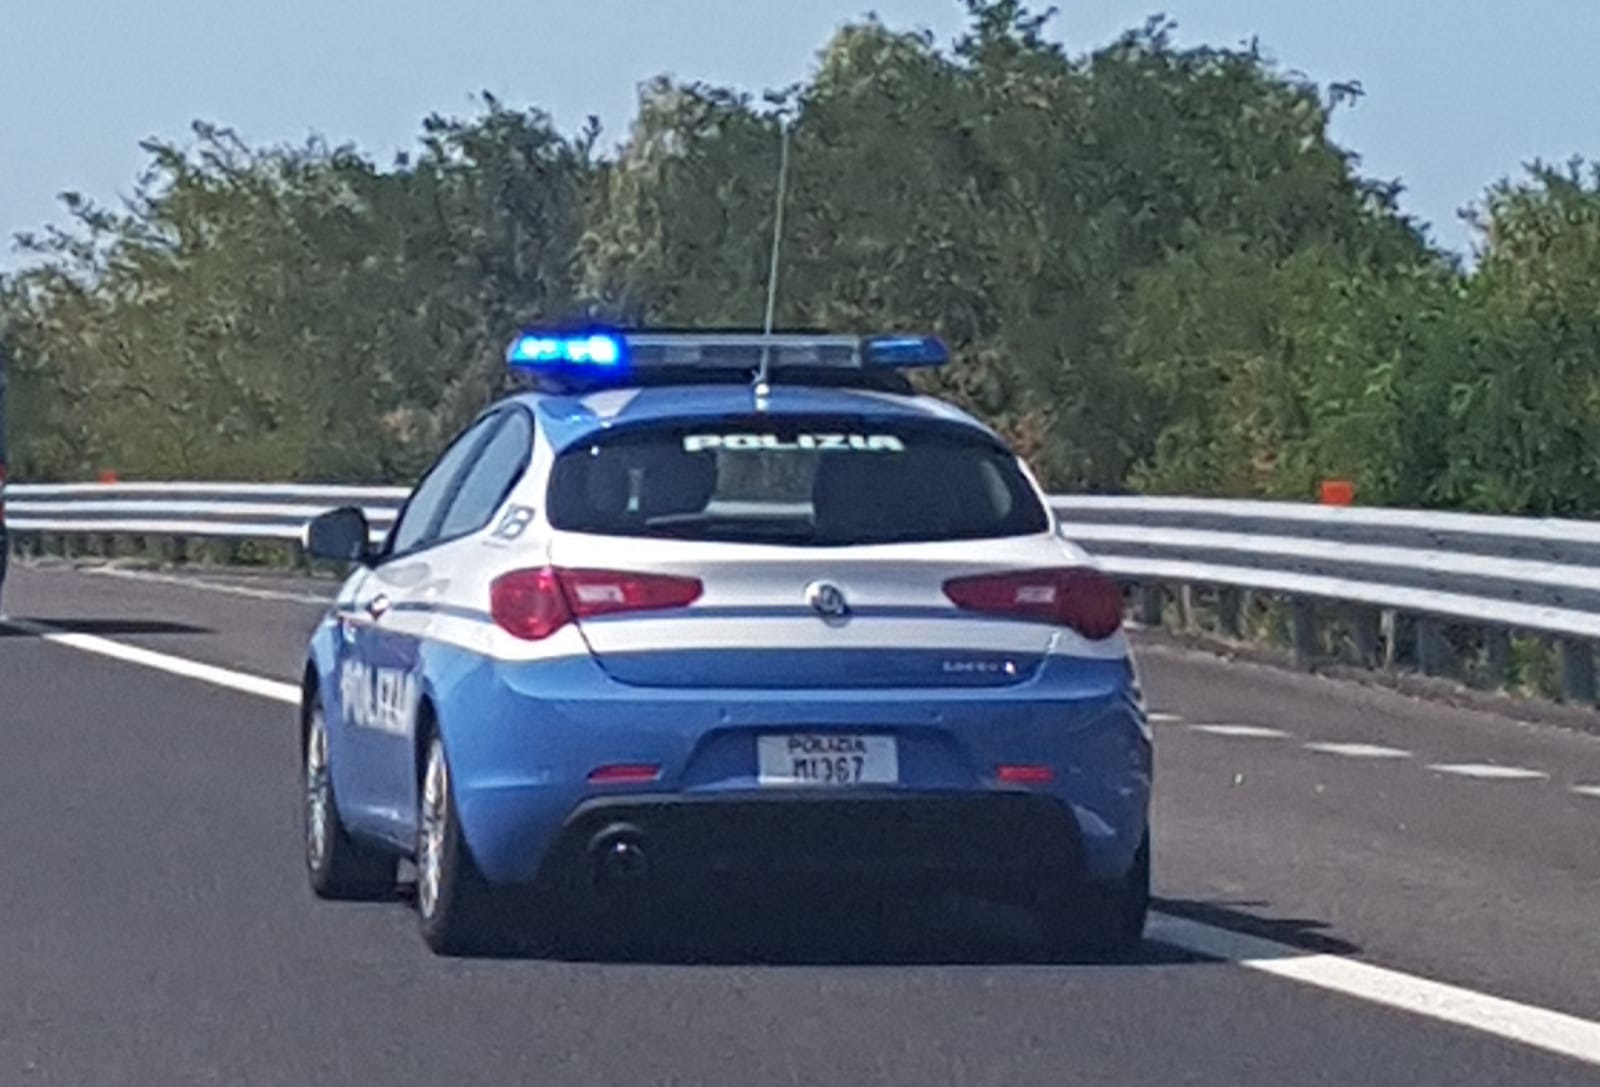 “Bonificava” la zona interessata dalla rapina sulla A14 nei pressi di Cerignola, evitando l’intervento delle forze dell’ordine. Arrestato dalla polizia stradale.